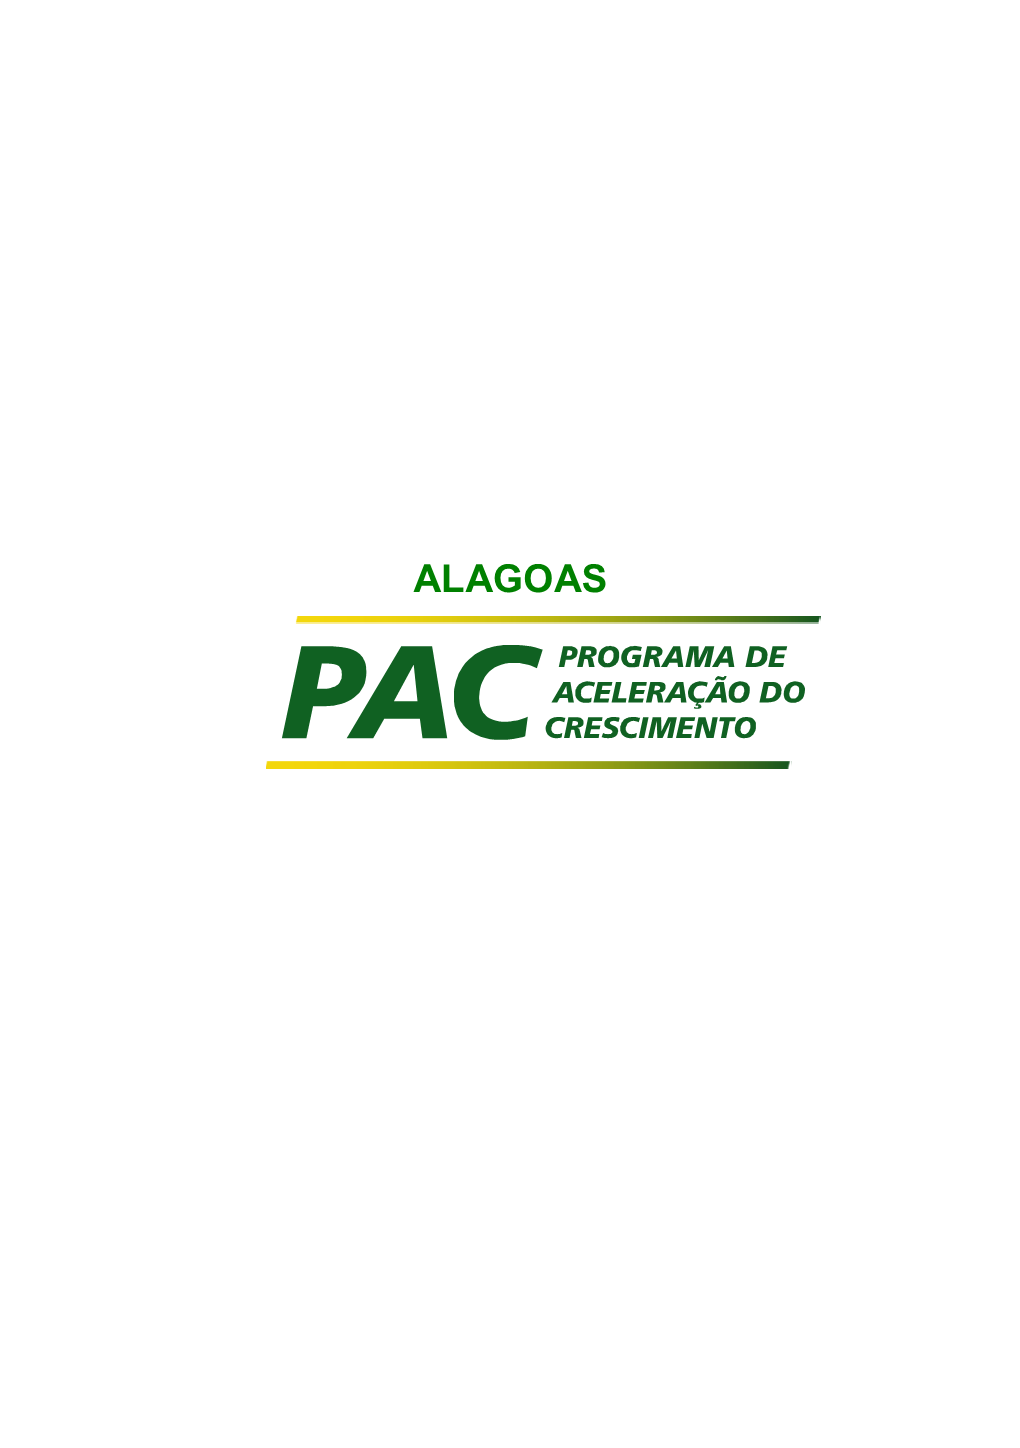 Alagoas AL SE 2.720,0 1.230,0 Obra Natural Produ Produ Óleo E Gás Petr Ção Preparatória Gasodutos Malha Nordeste